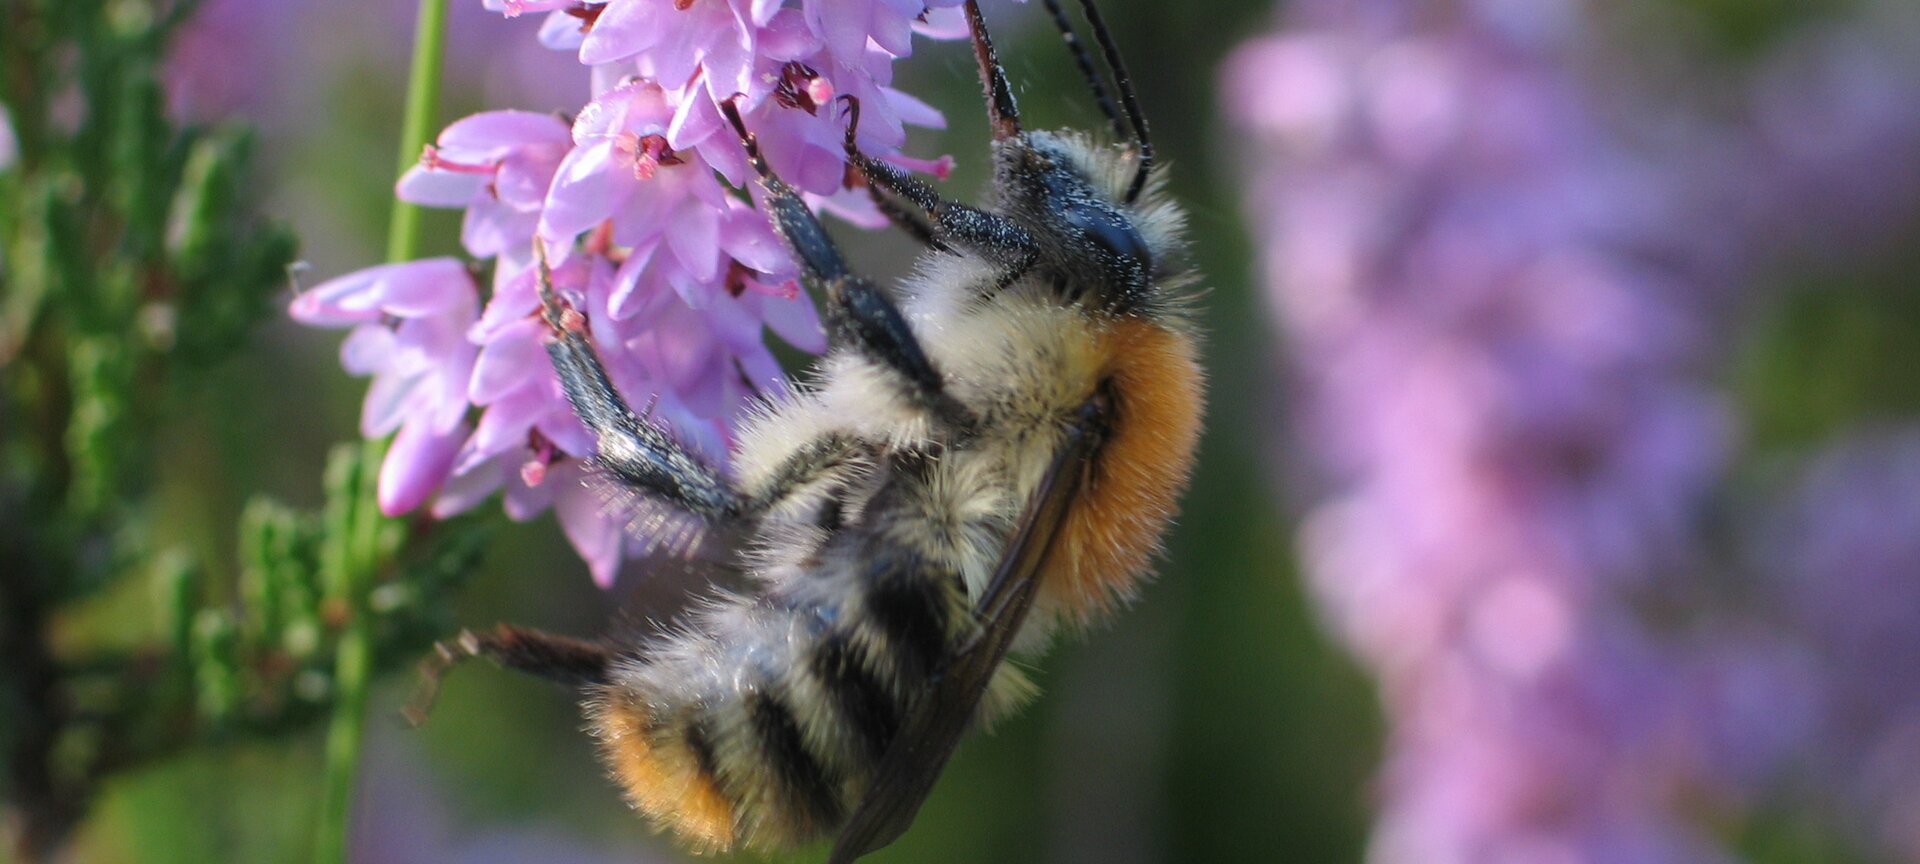 Educatieve bijenstand en allergievriendelijke tuin 'Op 't Sonnis' - Educatieve Bijenstand Op't Sonnis